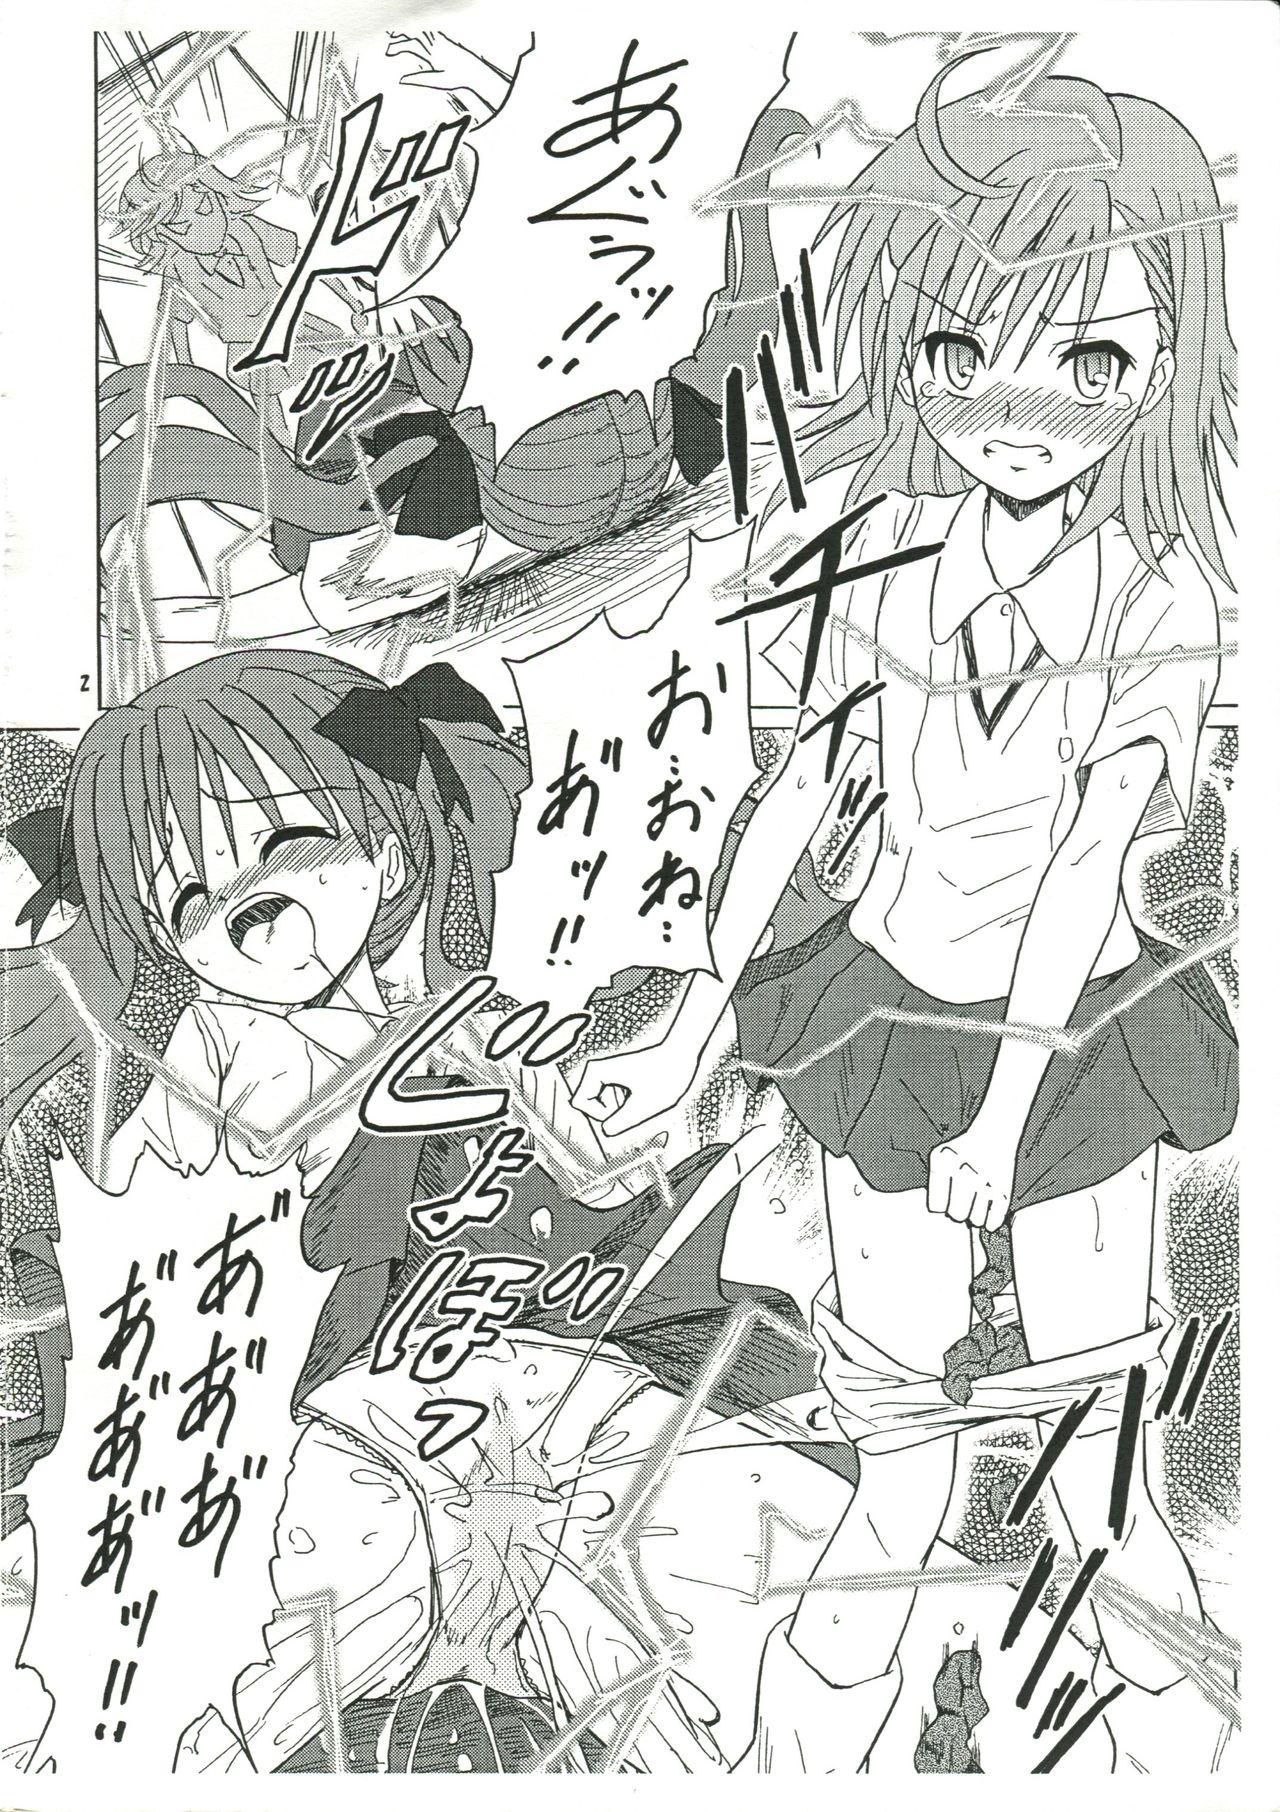 Thief Chirashi no Ura Vol. 3 - Toaru kagaku no railgun Toaru majutsu no index Concha - Page 3